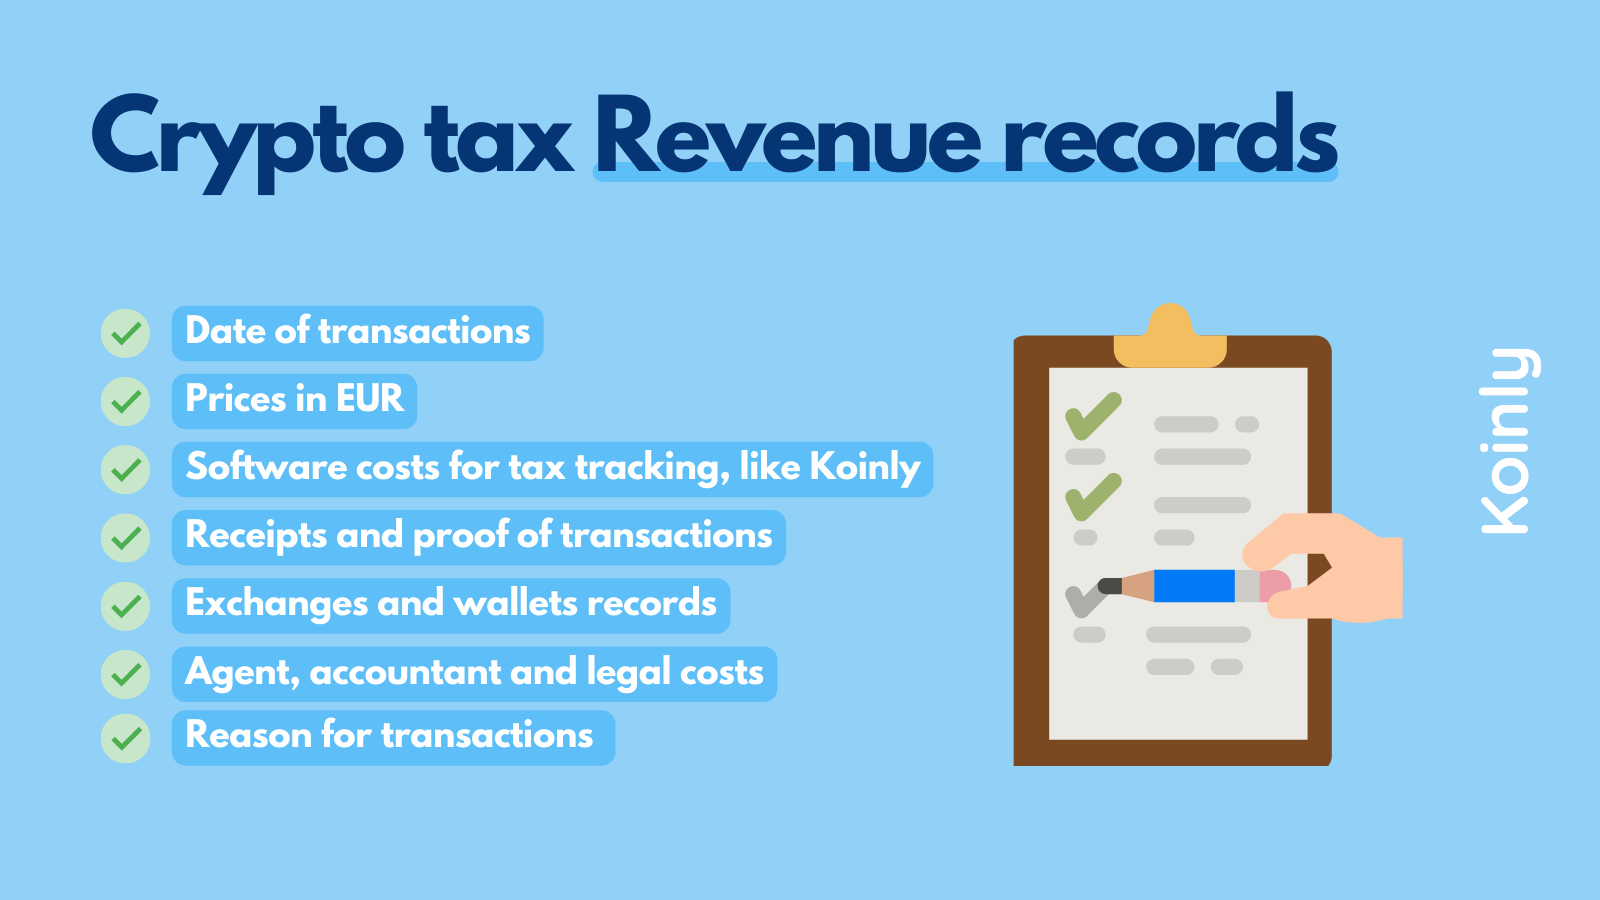 Revenue records